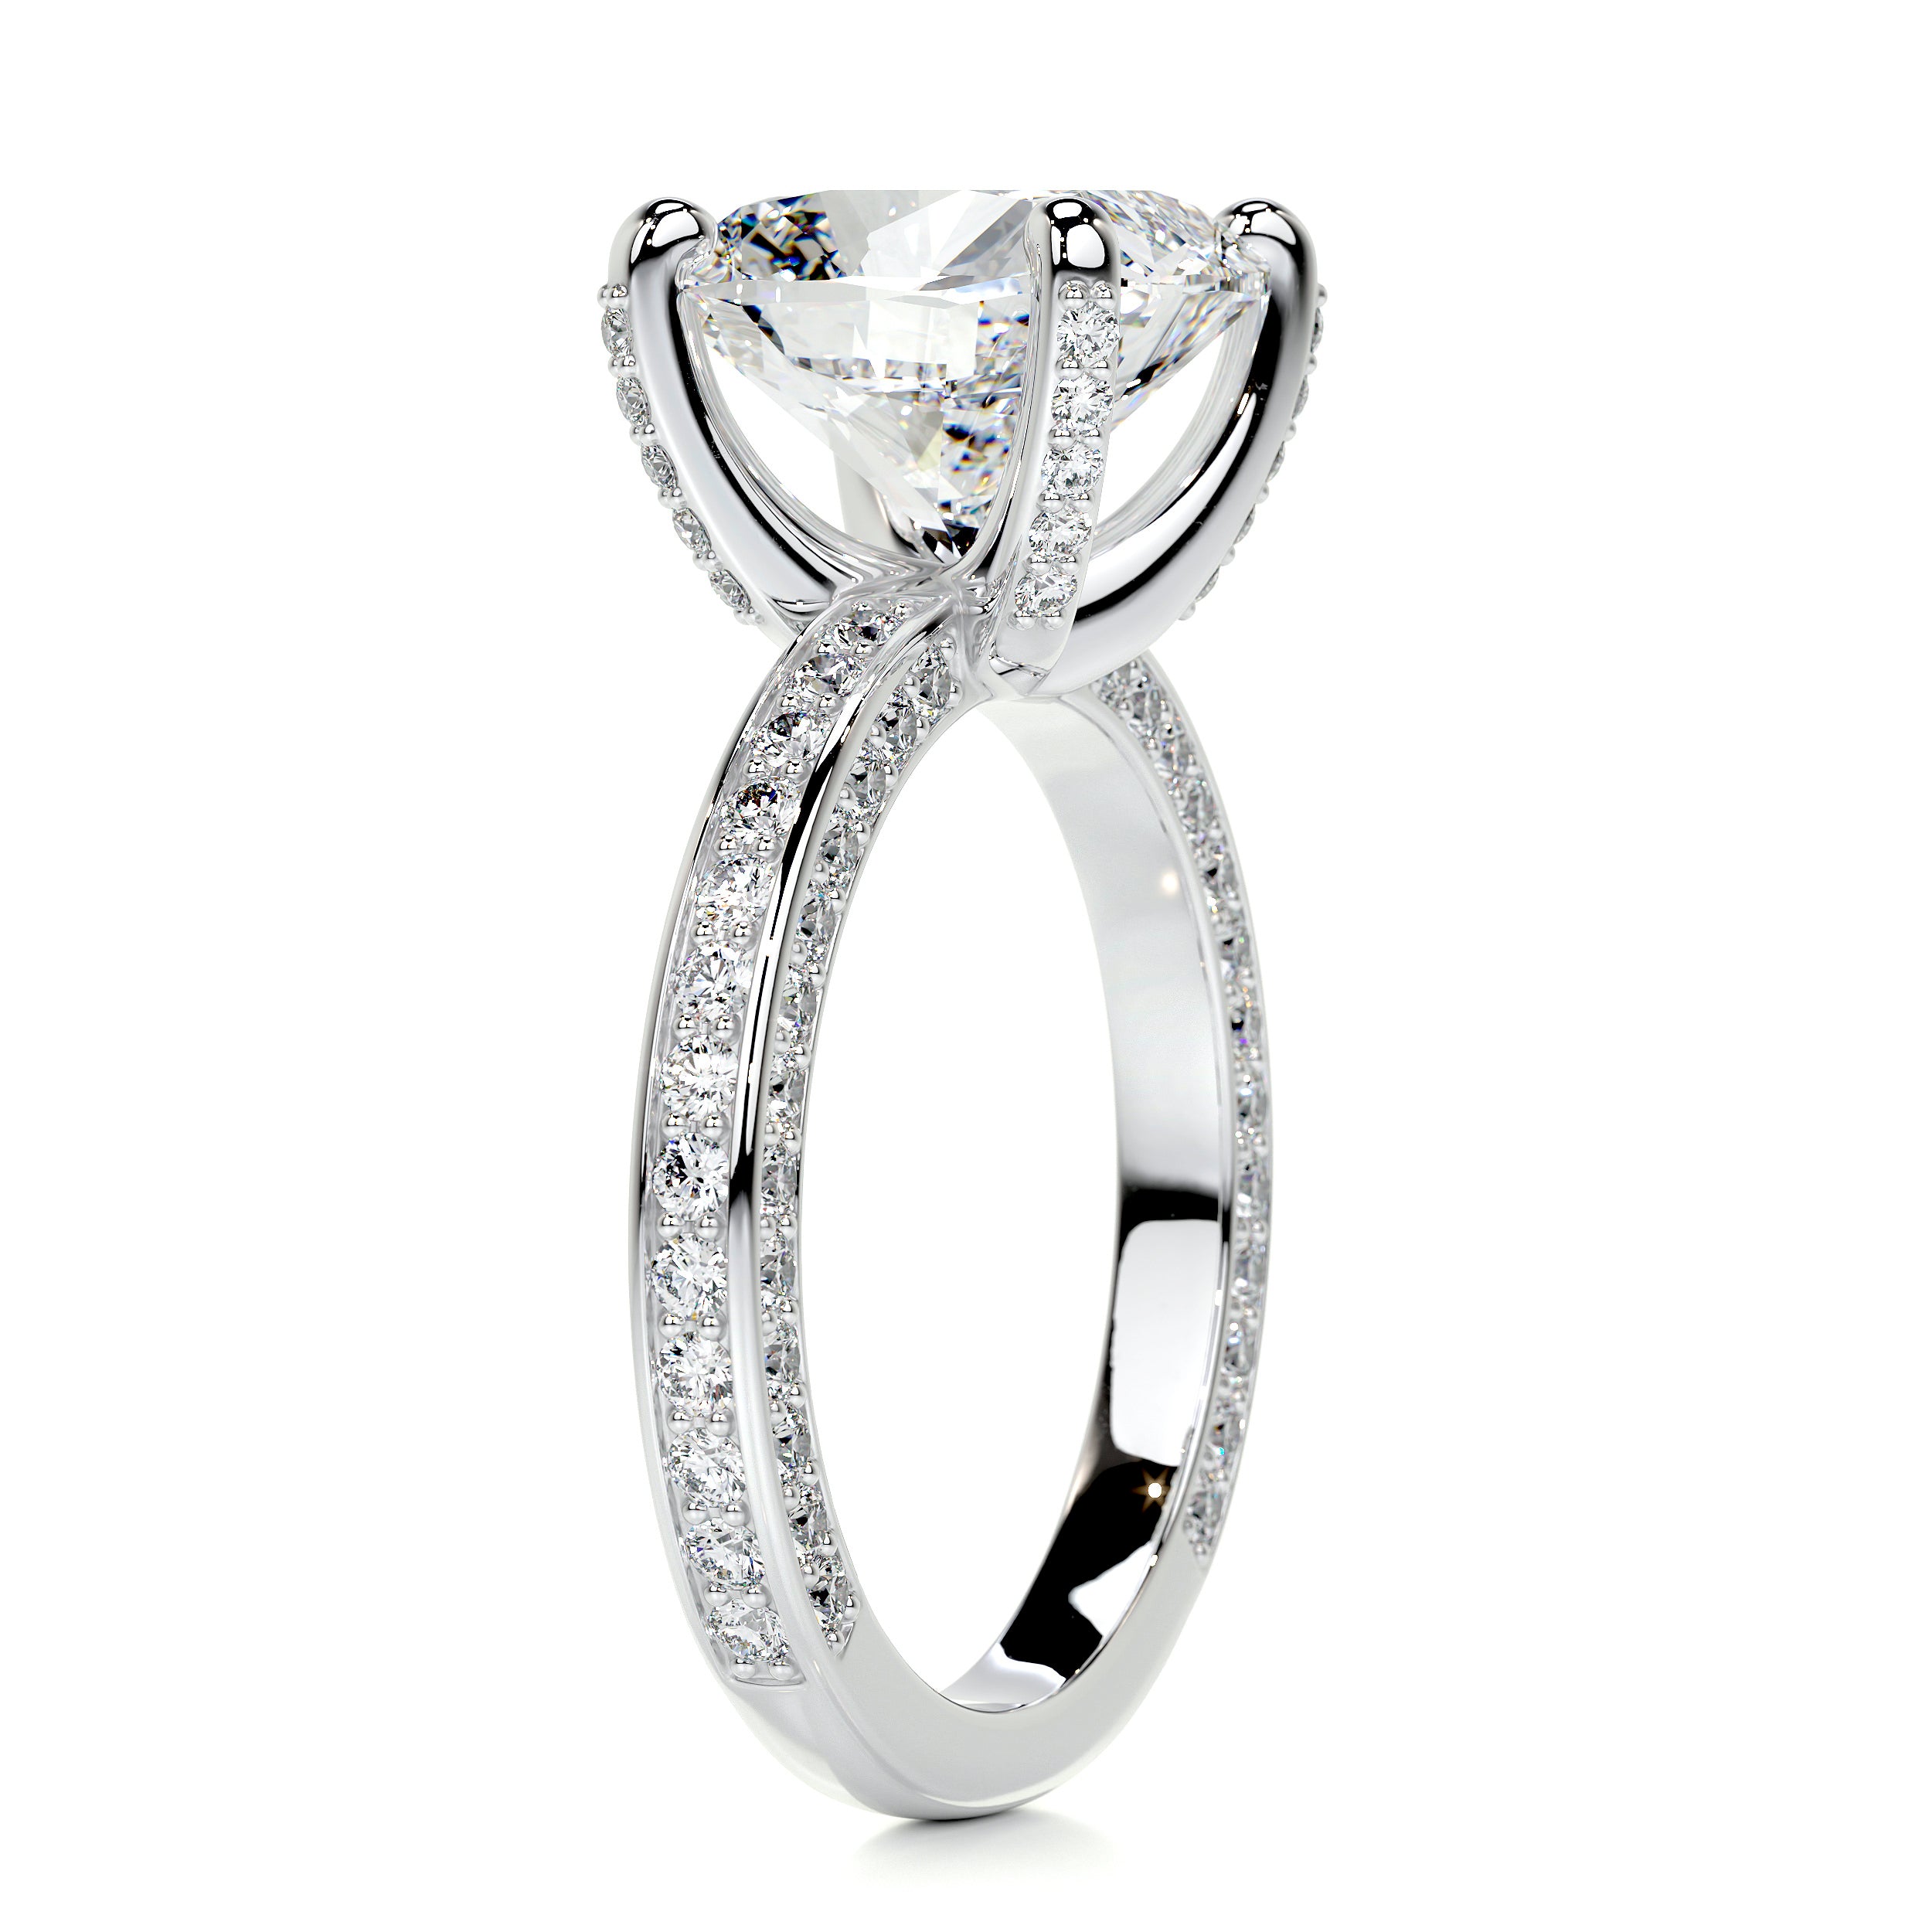 Lyric Diamond Engagement Ring   (2.75 Carat) -14K White Gold